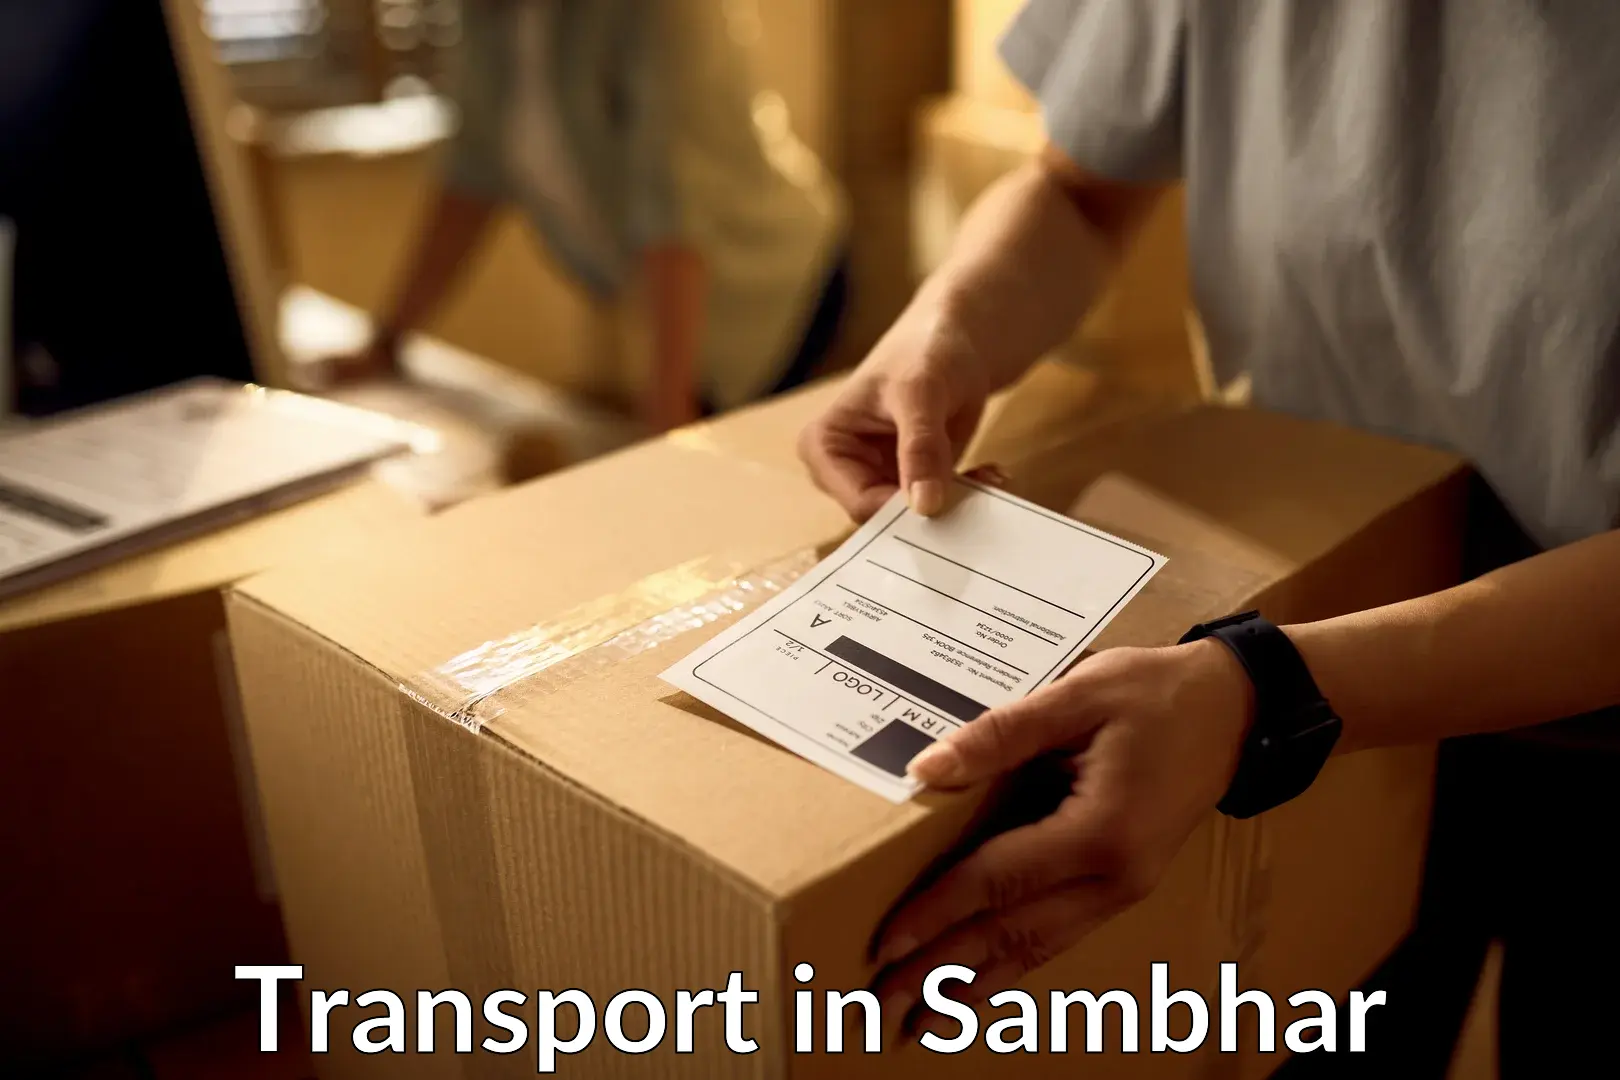 Transportation services in Sambhar